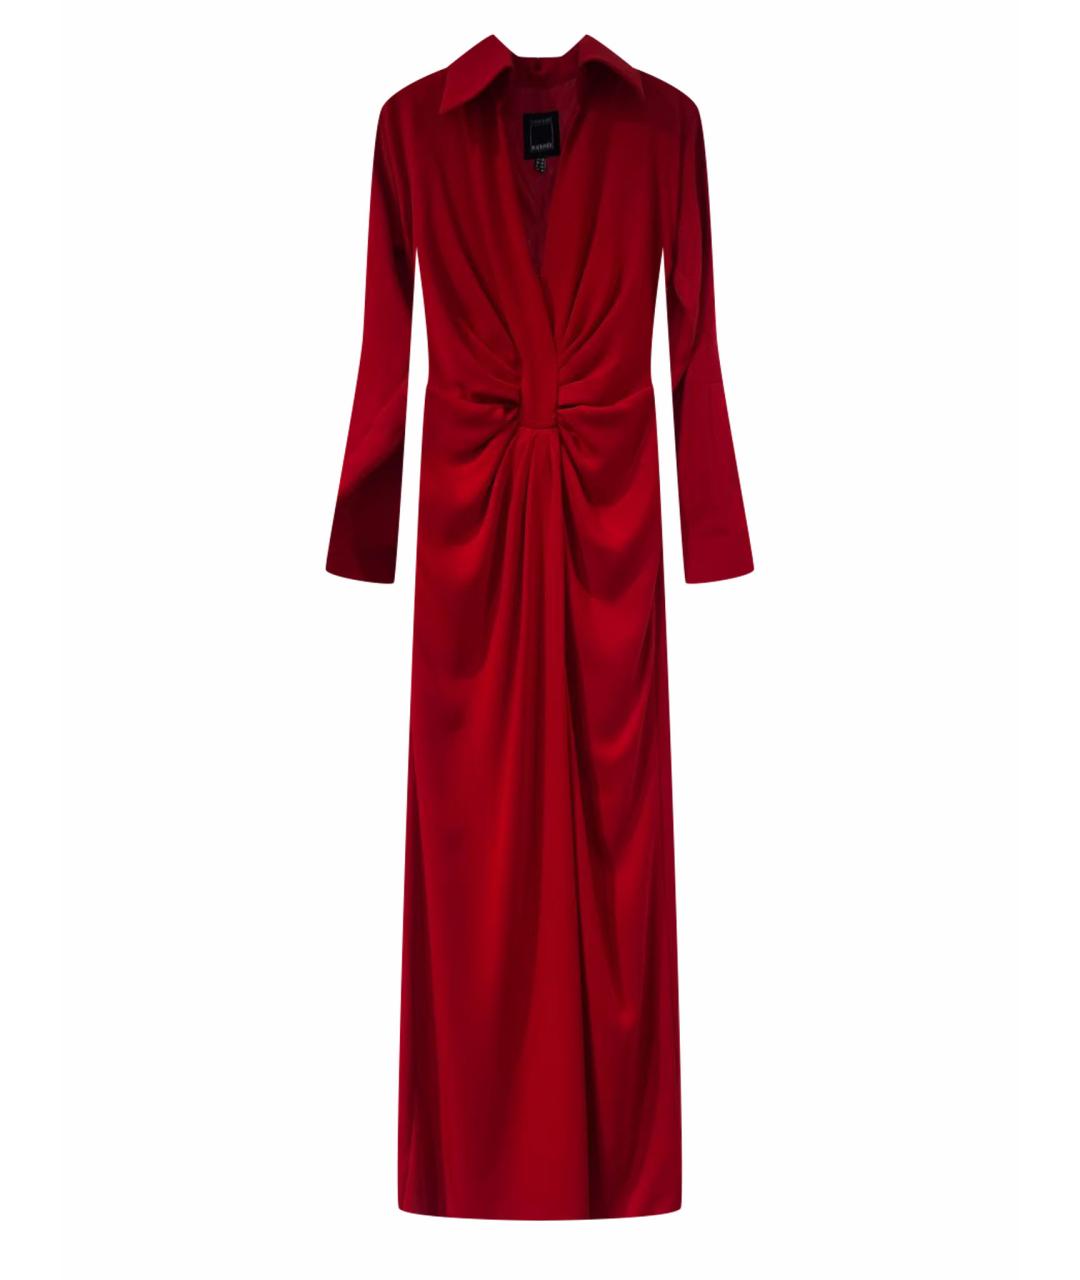 TARIK EDIZ Красное креповое вечернее платье, фото 1